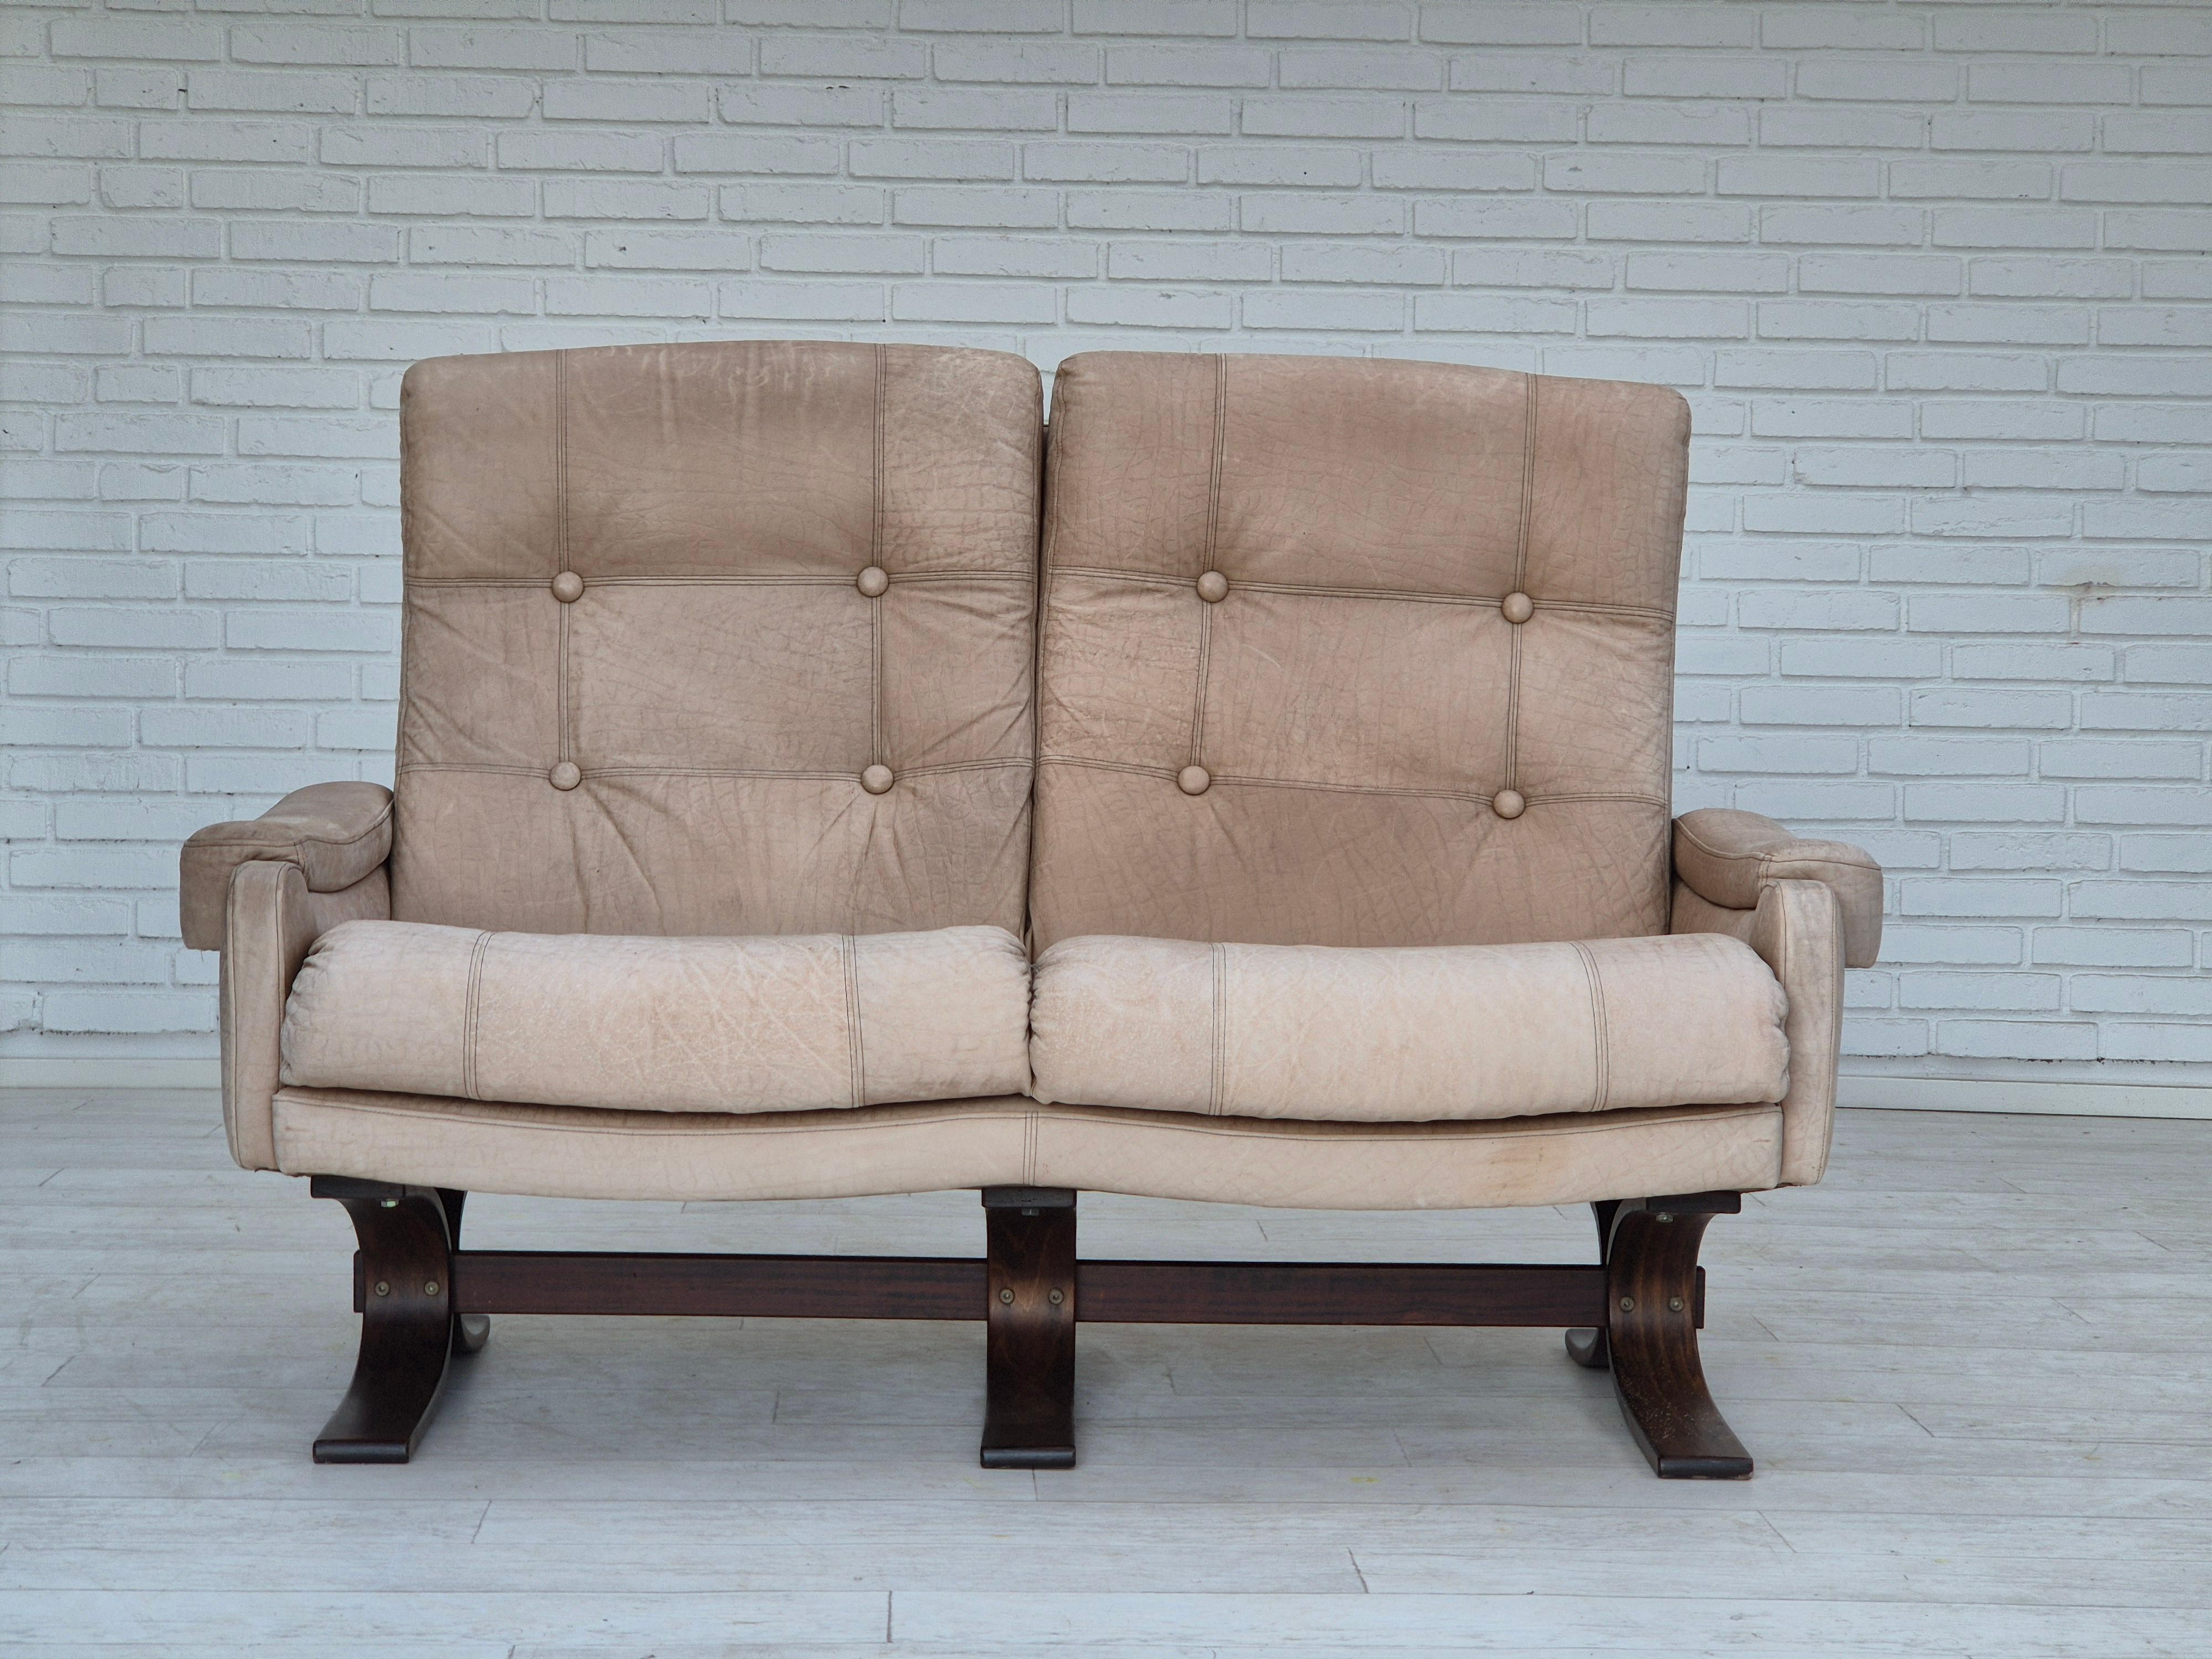 Skandinavisches 2-Sitzer-Sofa aus den 1970er Jahren in sehr gutem Originalzustand: keine Gerüche und keine Flecken. Hellbraunes/cremiges Leder mit schöner Patina. Gebogene Holzbeine aus Buche. Hergestellt von einem dänischen oder schwedischen